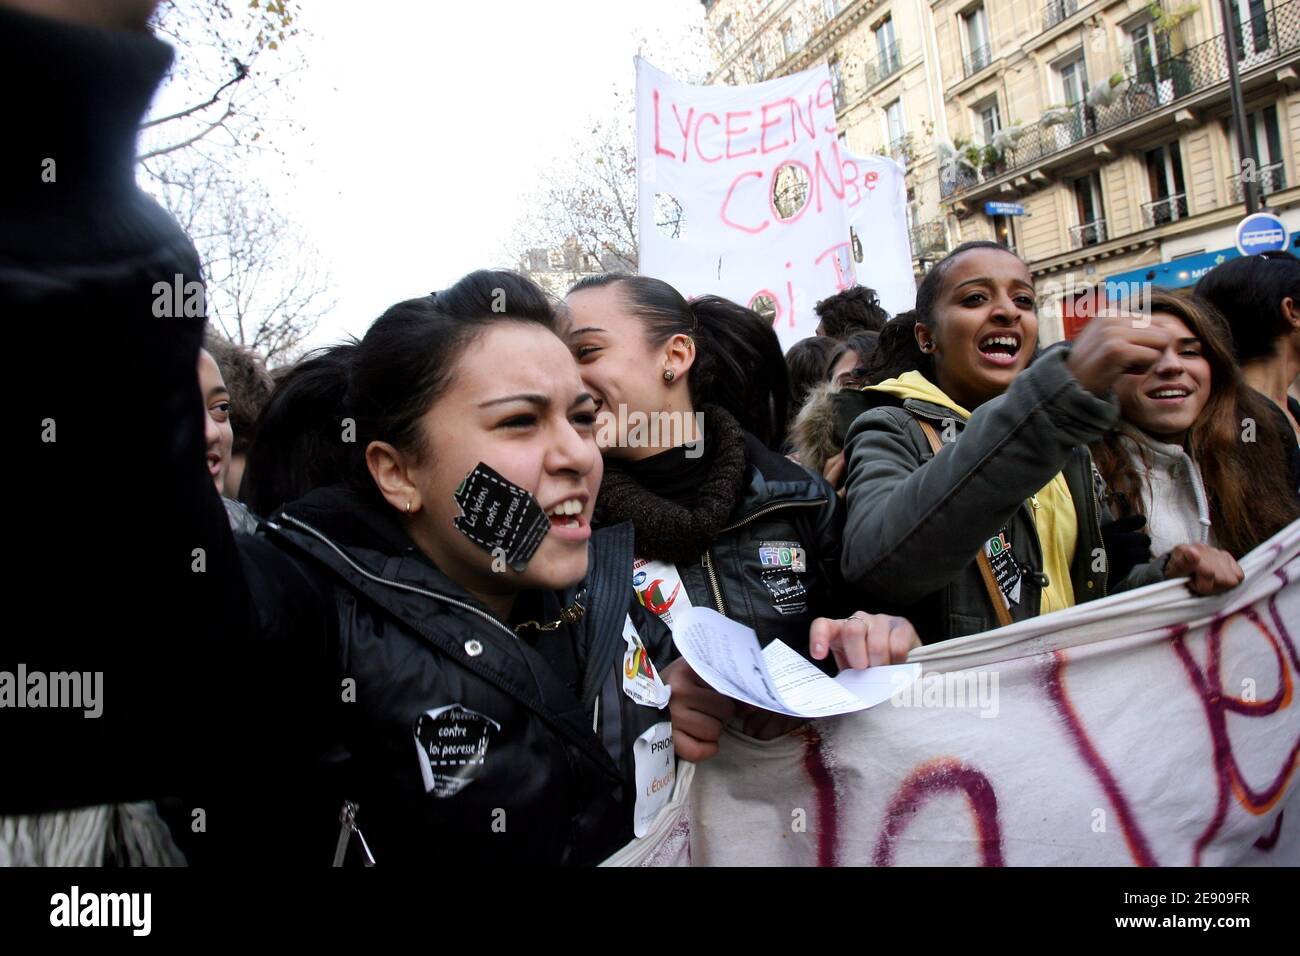 Studenten rufen Slogans während einer Demonstration zum Abbruch des "LRU-Gesetzes" in Paris, Frankreich am 22. November 2007. Studenten protestieren gegen das Pecresse-Gesetz, das diesen Sommer verabschiedet wurde und Universitäten mehr Autonomie gewährt, indem es ihnen erlaubt, private Mittel zu beantragen und engere Beziehungen zu Unternehmen aufzubauen. Die Studenten schlossen sich einem einwöchigen Streik des Verkehrs in der französischen Metropole an, was den Druck gegen den französischen Präsidenten Nicolas Sarkozy noch verstärkt hat. Foto von Mehdi Taamallah/ABACAPRESS.COM Stockfoto